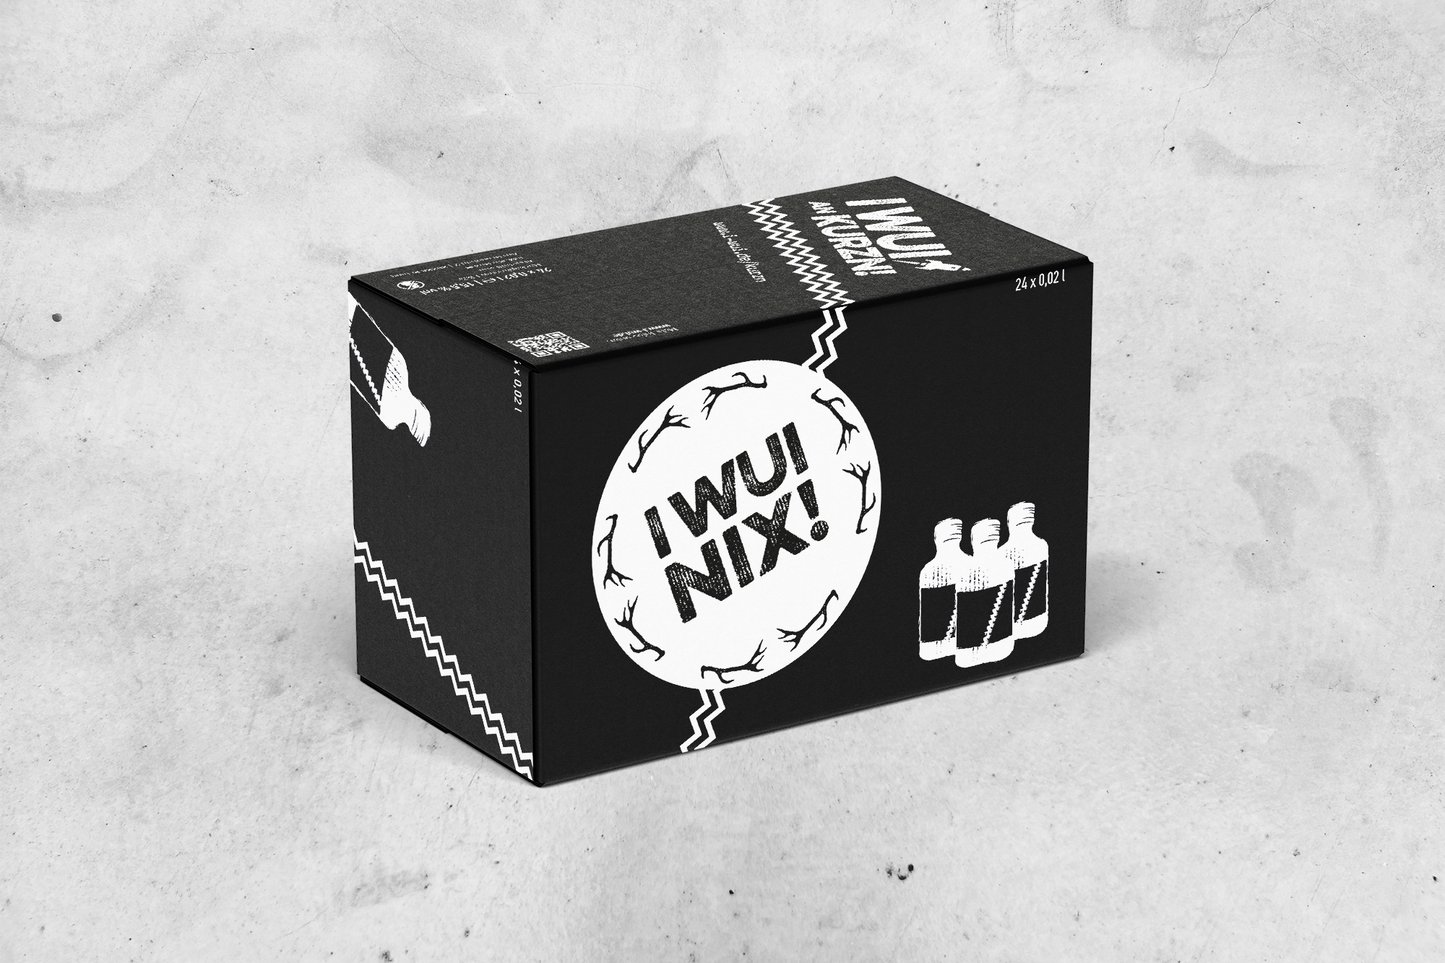 Unsere I WUI NIX! Geschenkbox